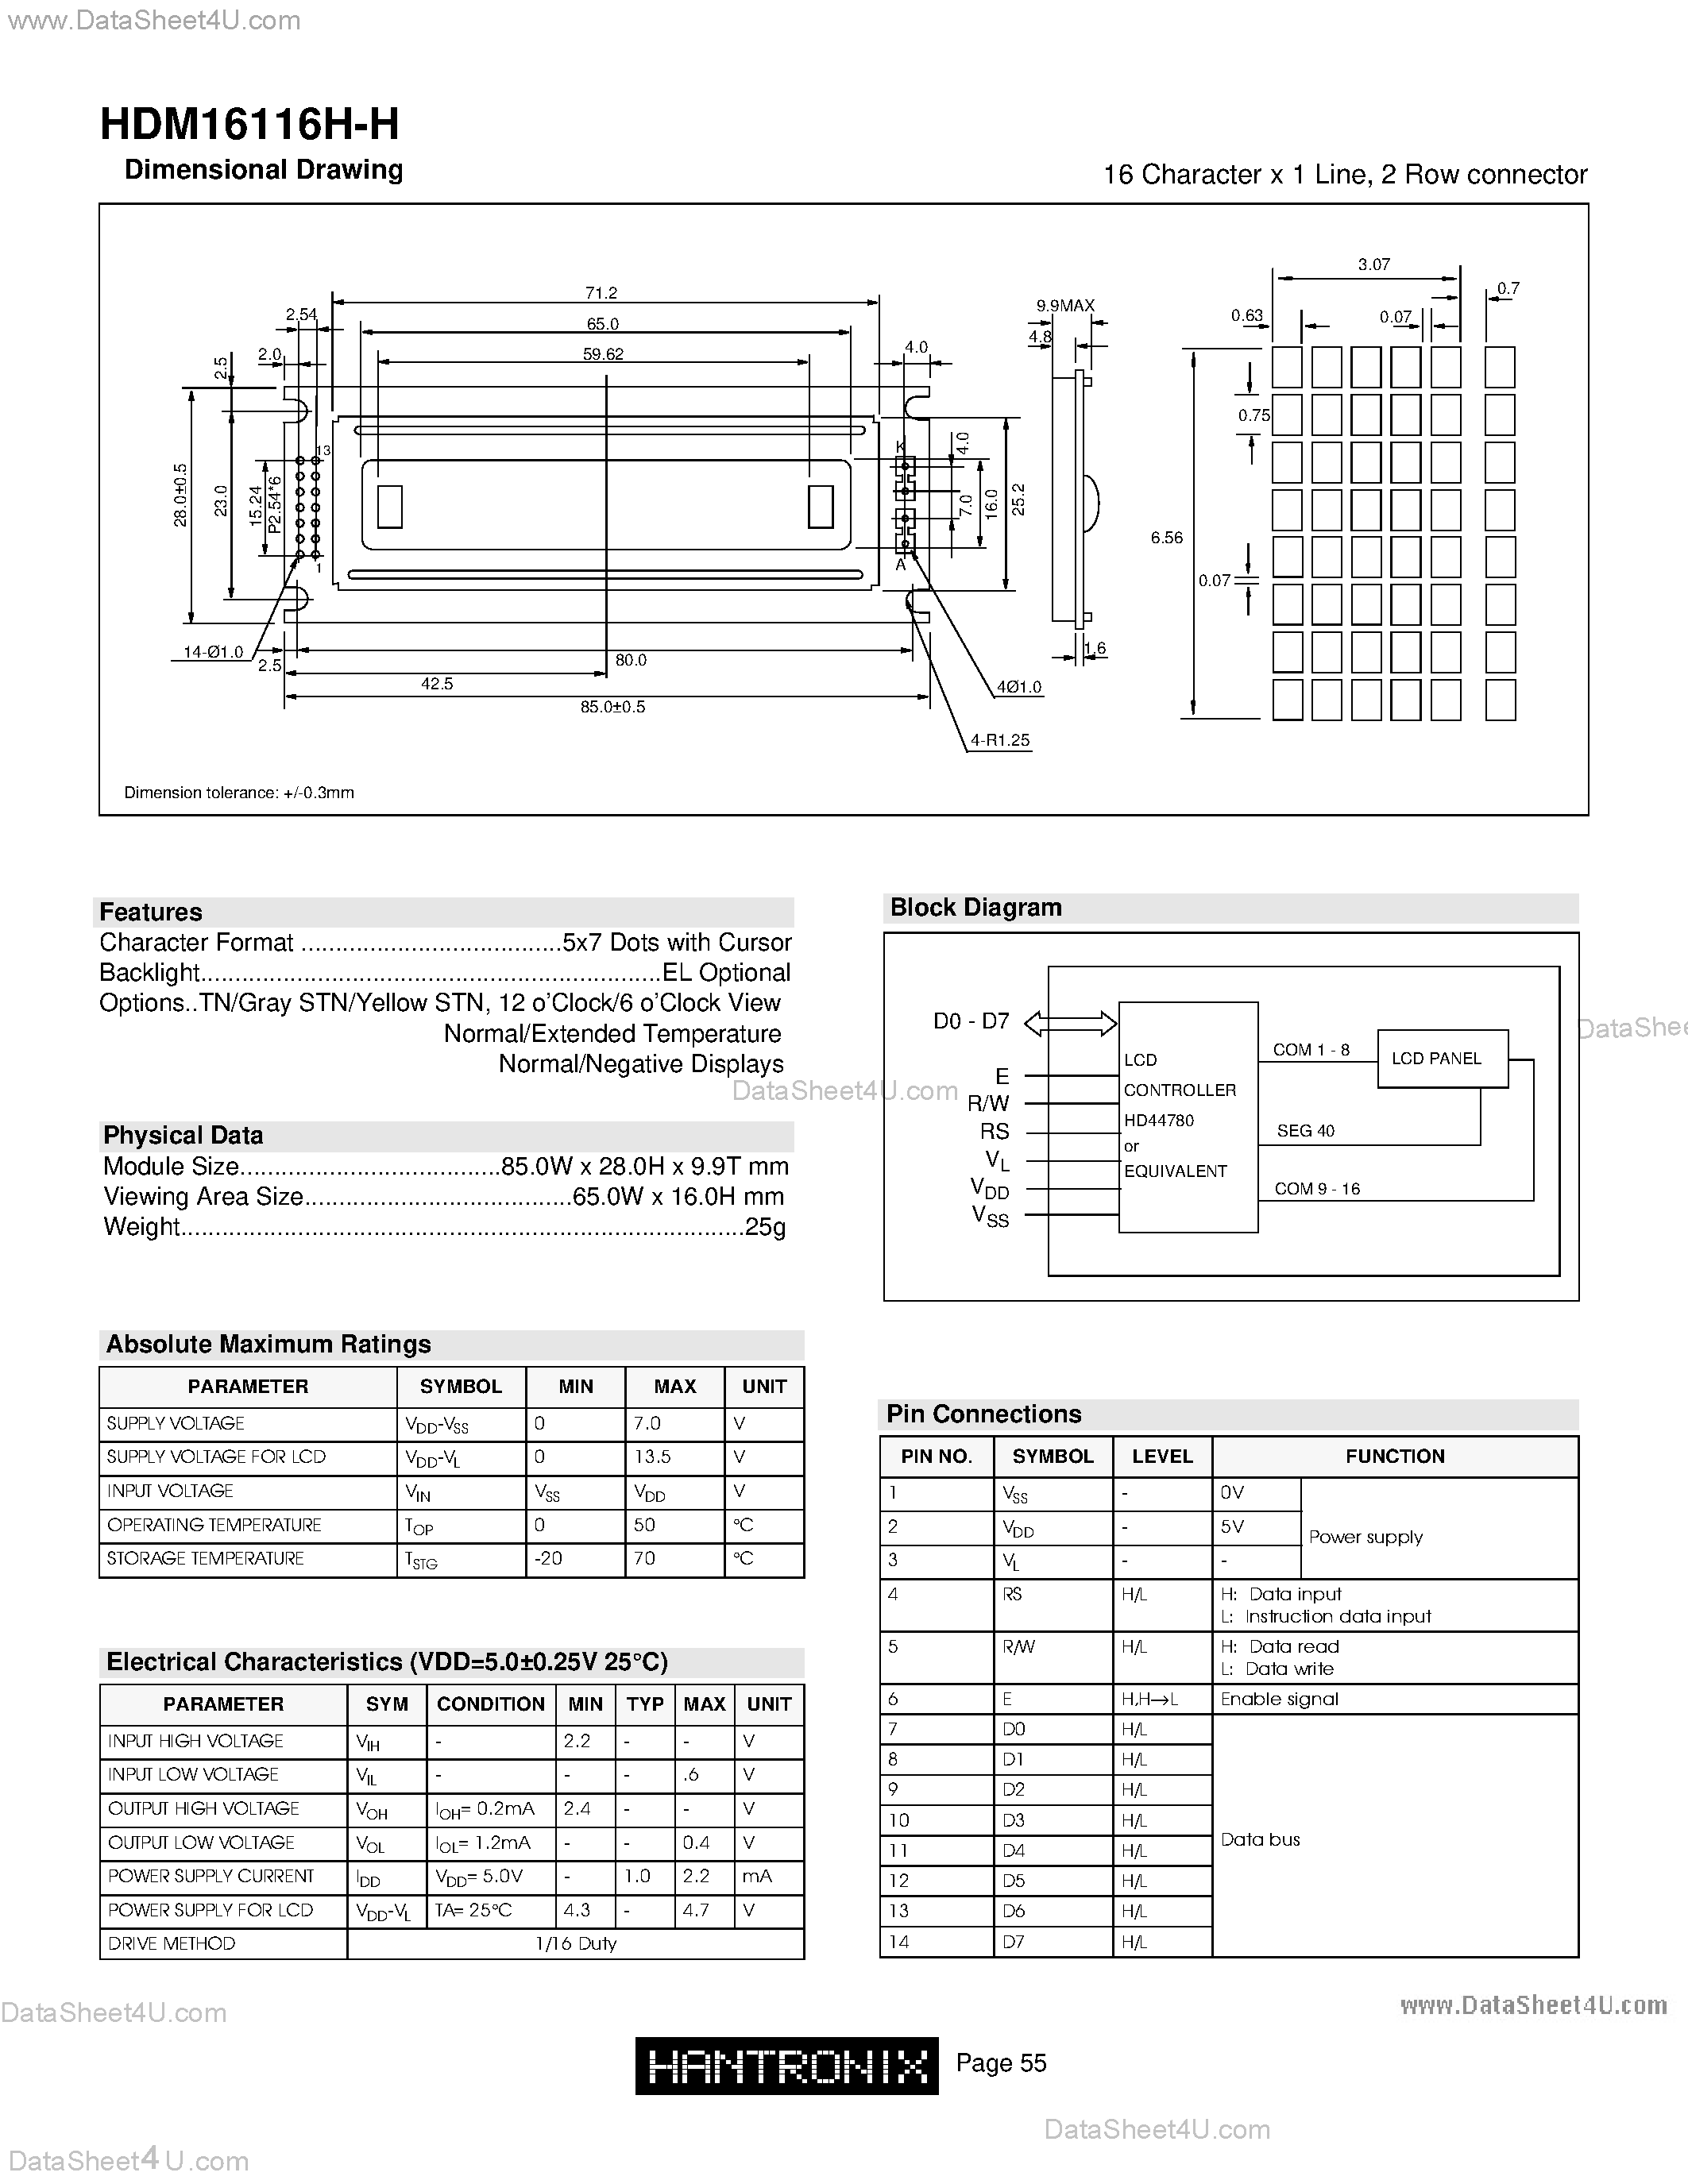 Даташит HDM16116H-H - LCD DOT MATRIX CHARACTER страница 1